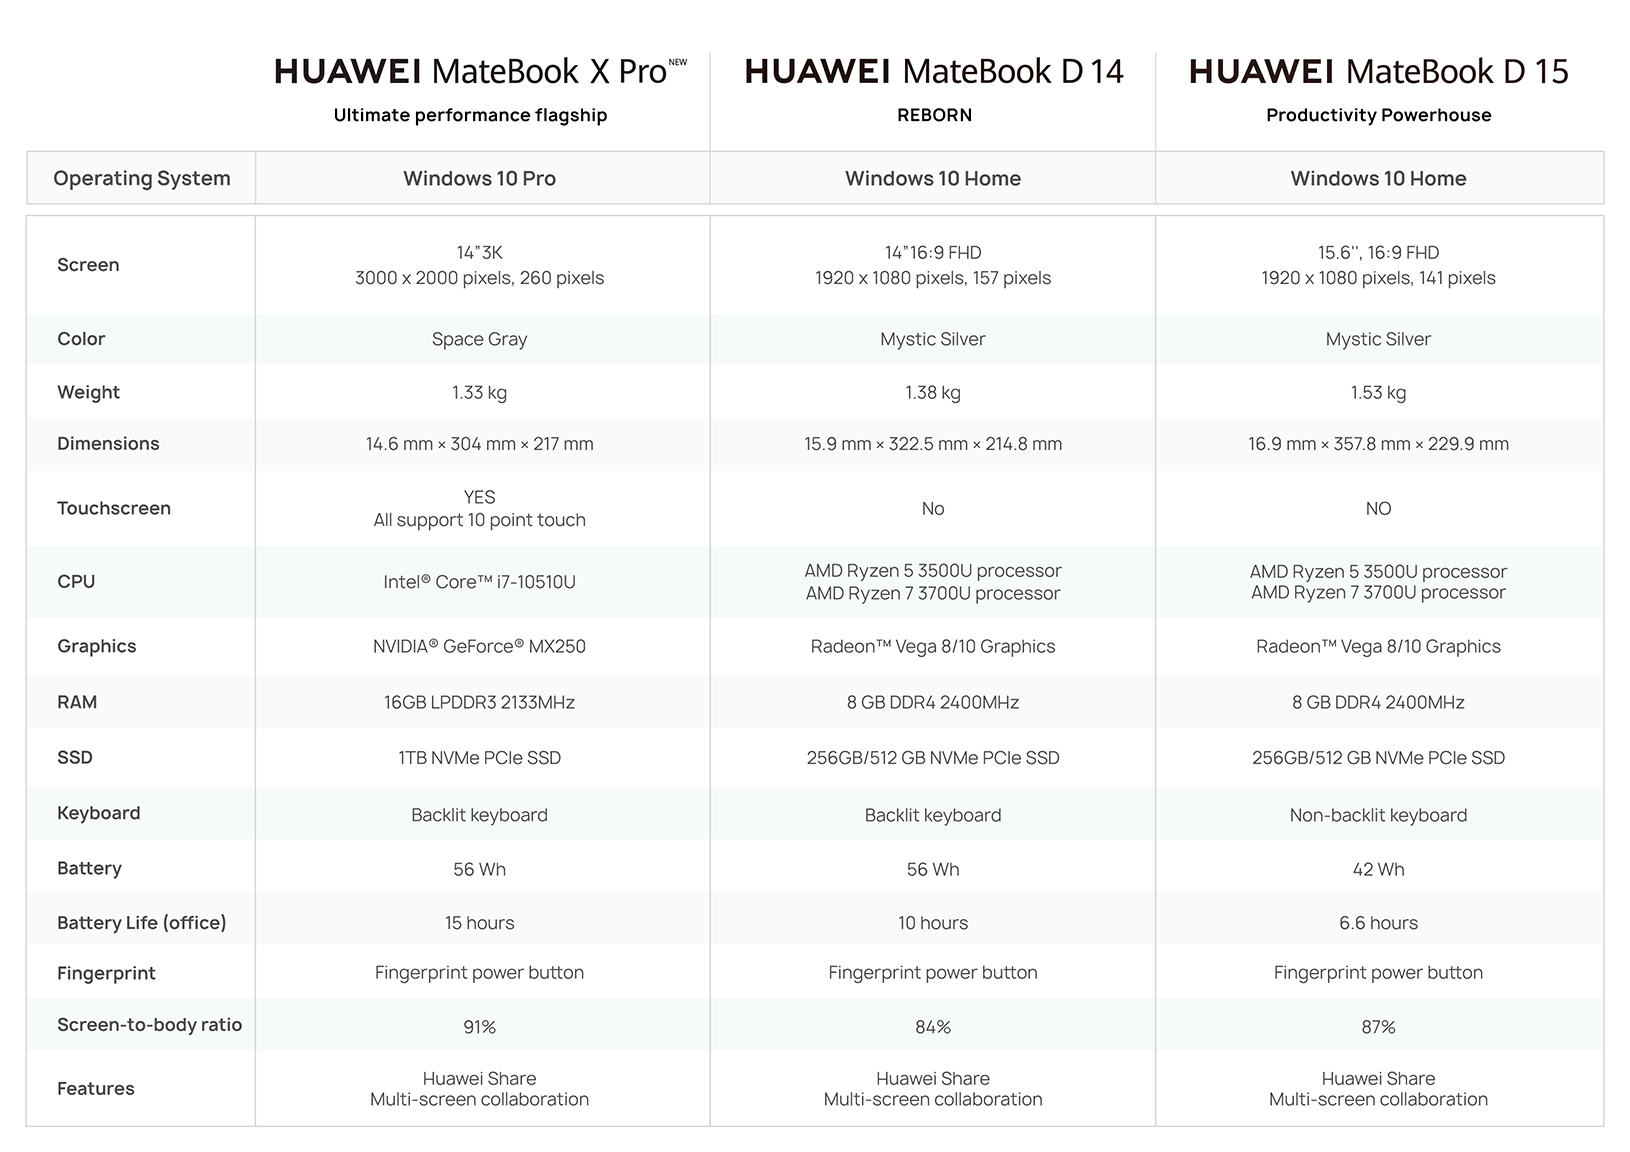 HUAWEI MateBook D 14 AMD